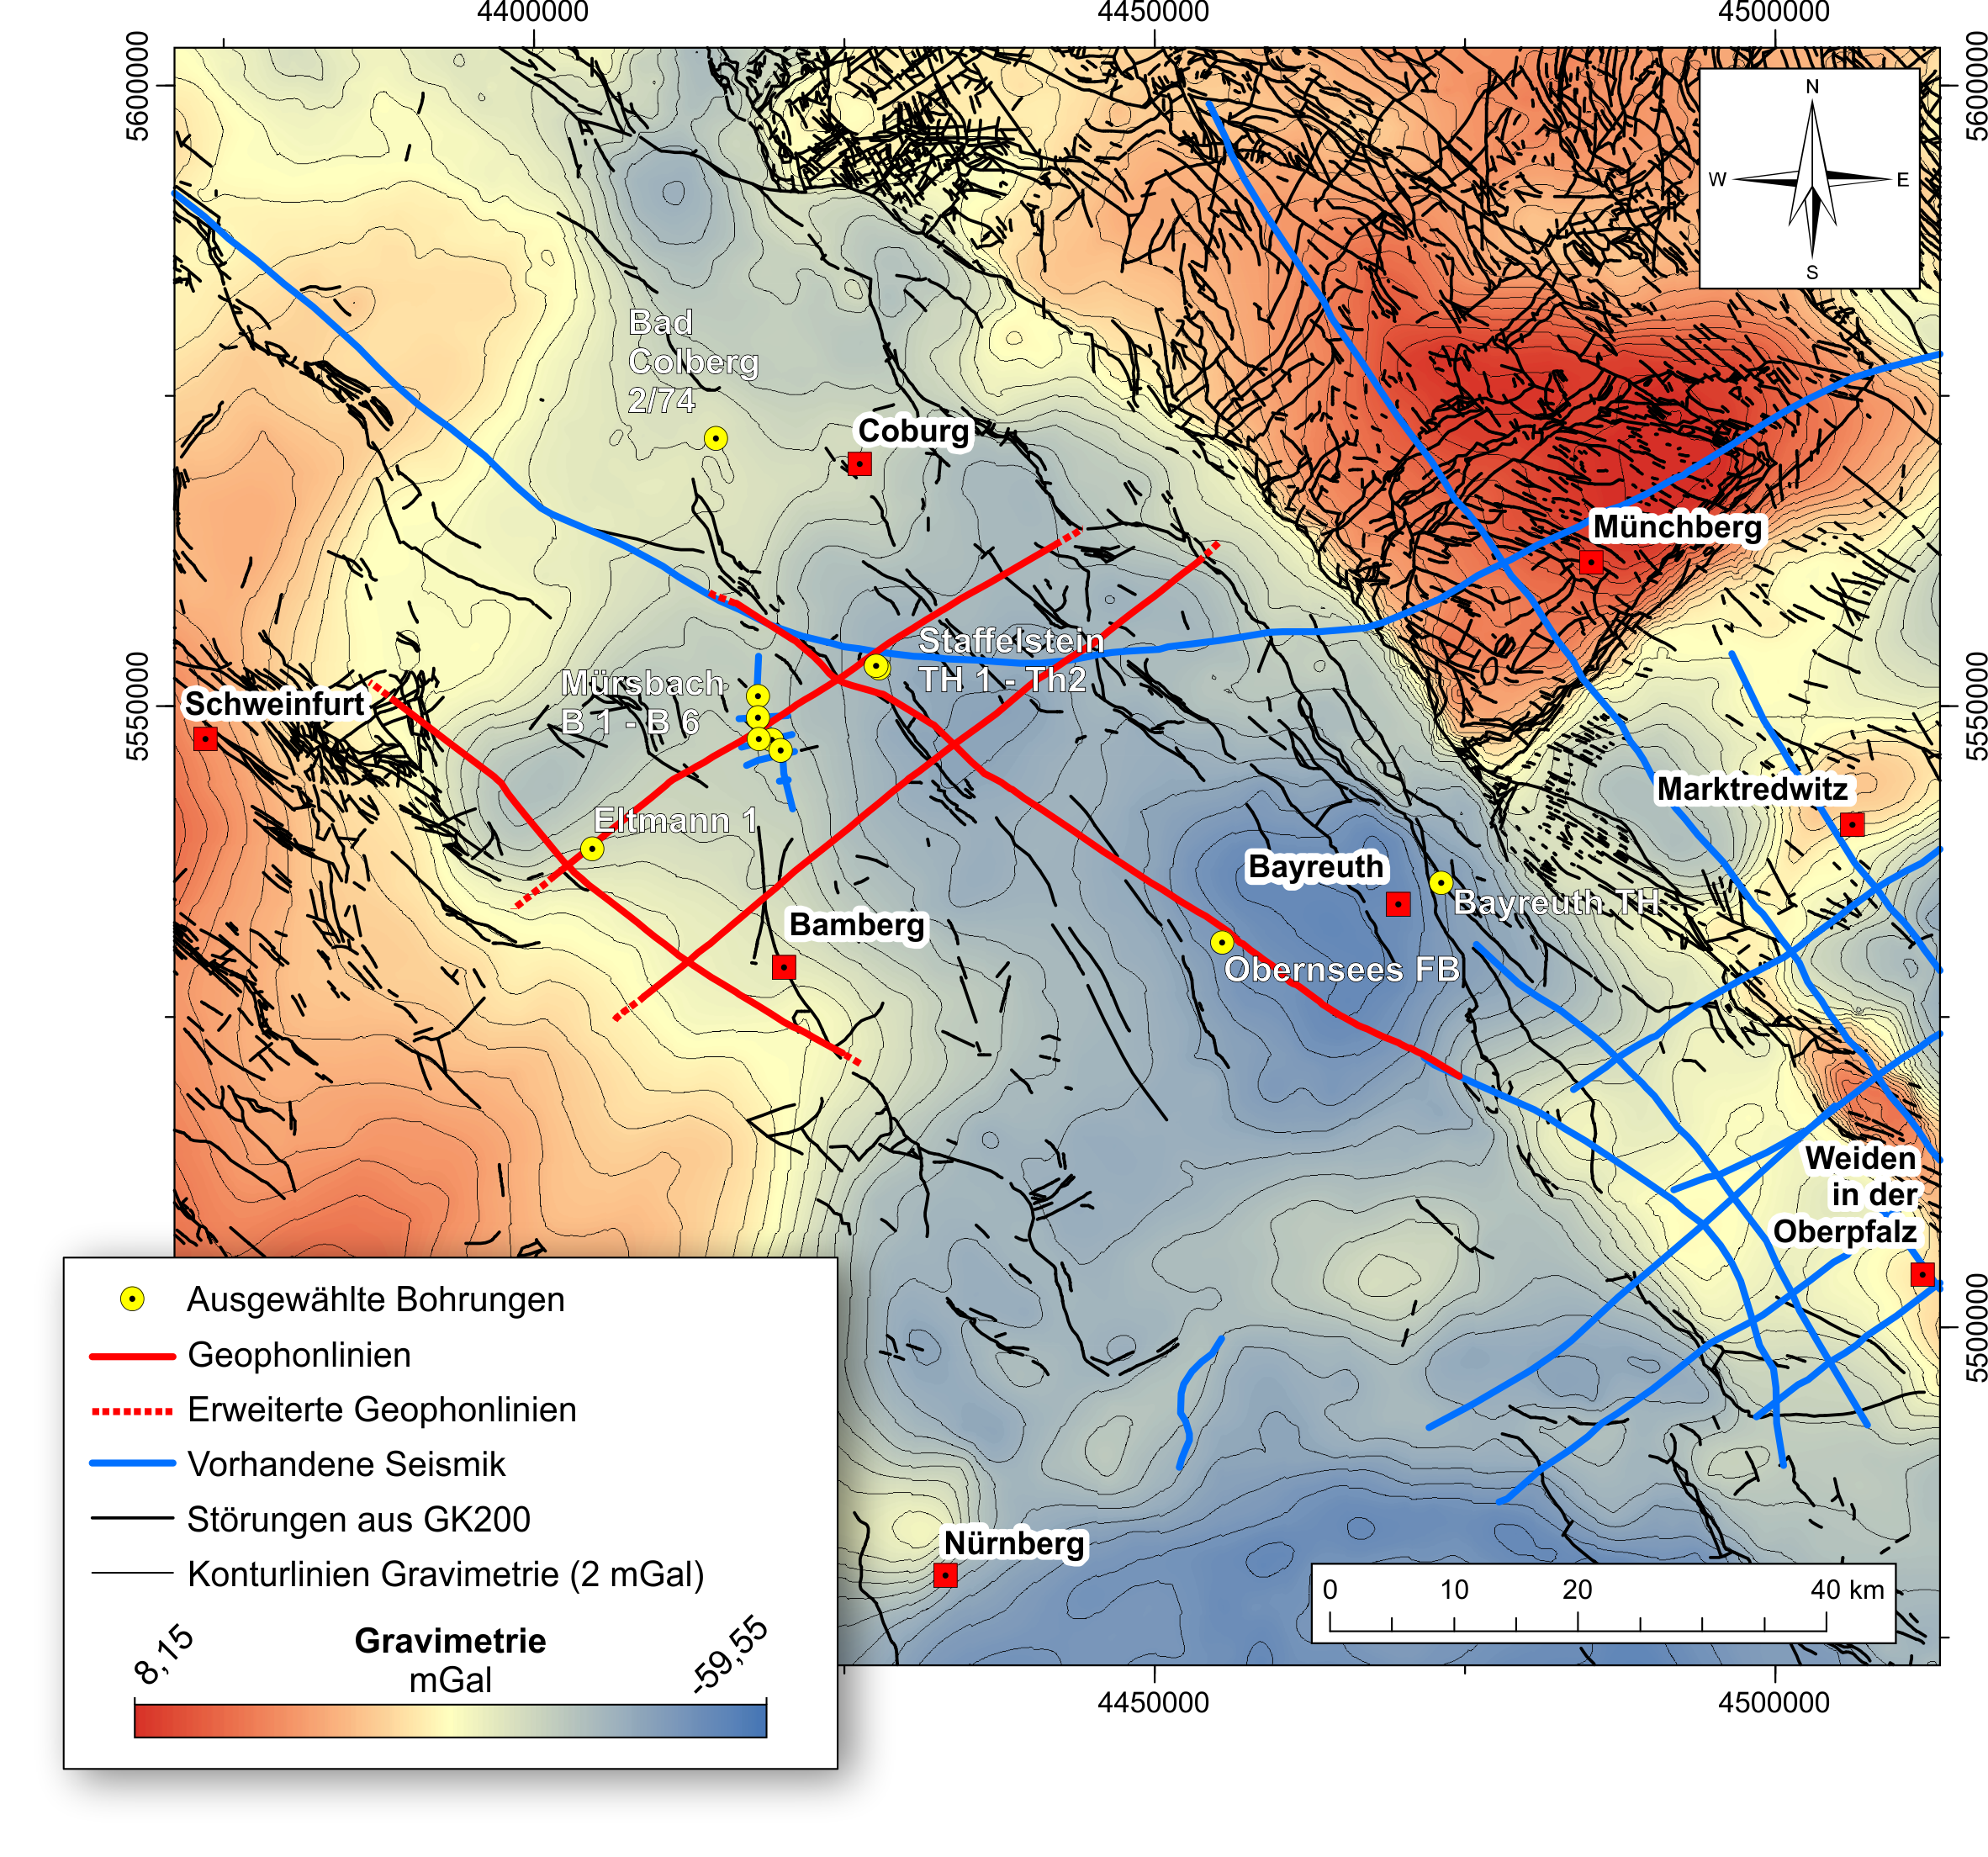 Geologische Grundlagen für die Planung der 2D-Seismik (Basisdaten: Schwerekarte von Deutschland, LIAG) (Erstellt: Andreas Eberts)